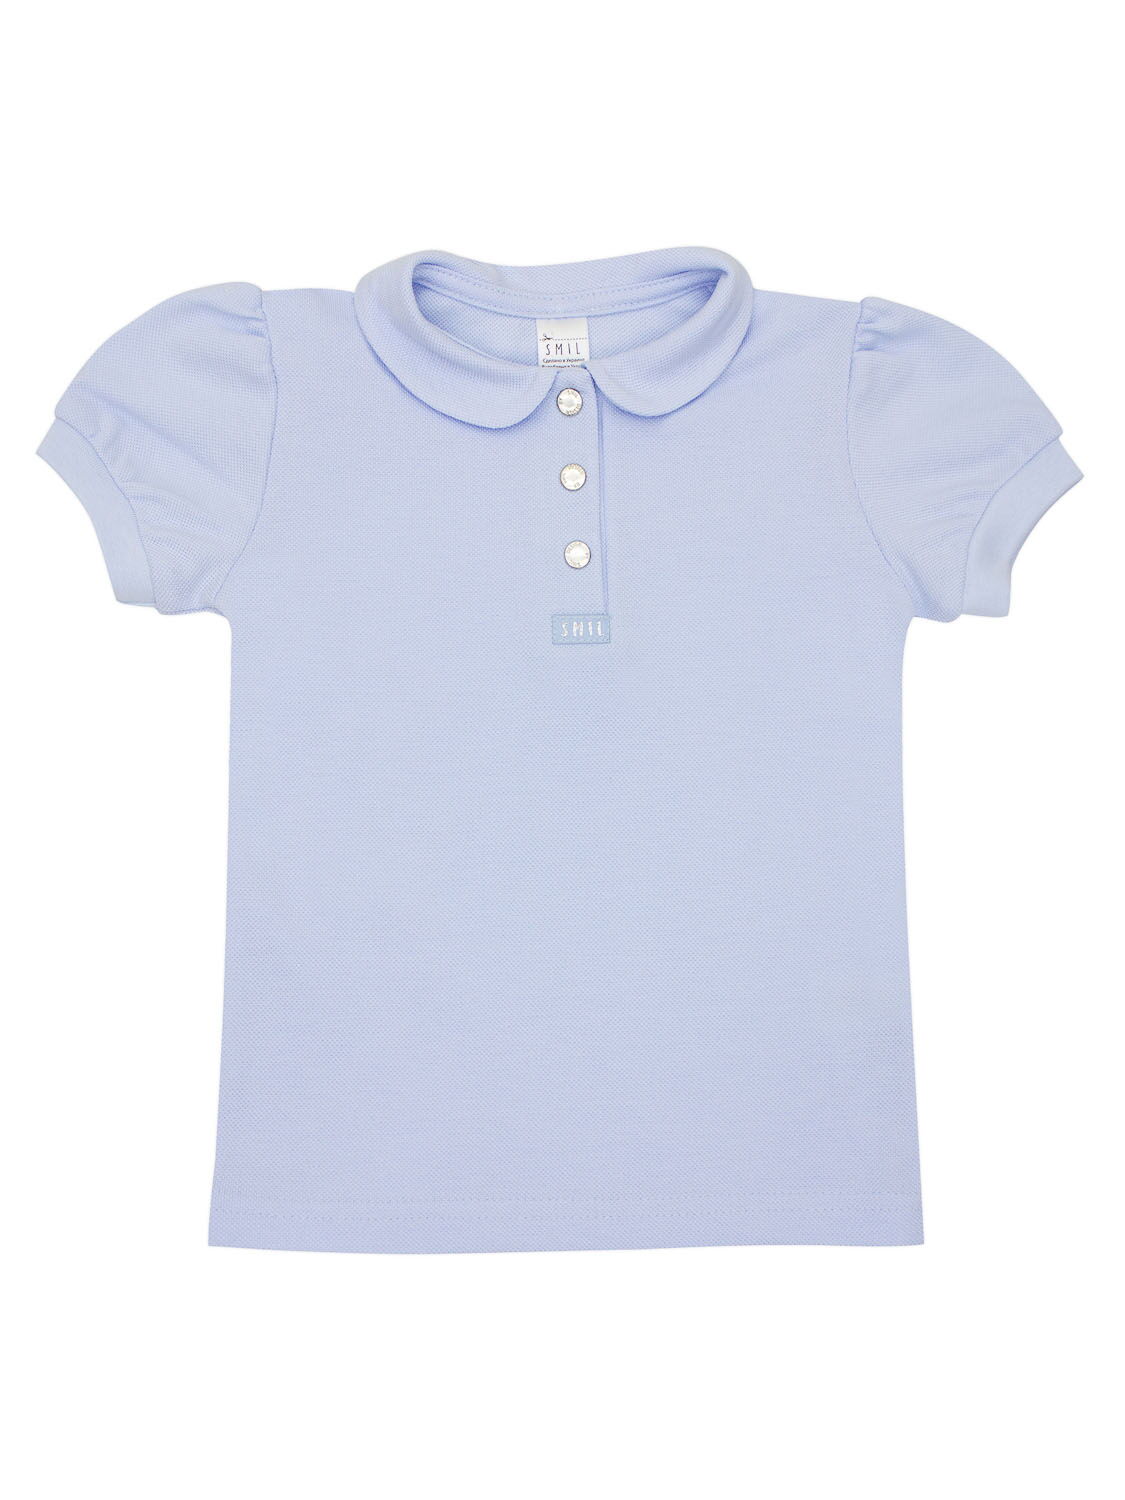 Блузка-поло с коротким рукавом SMIL голубая 114669 - цена